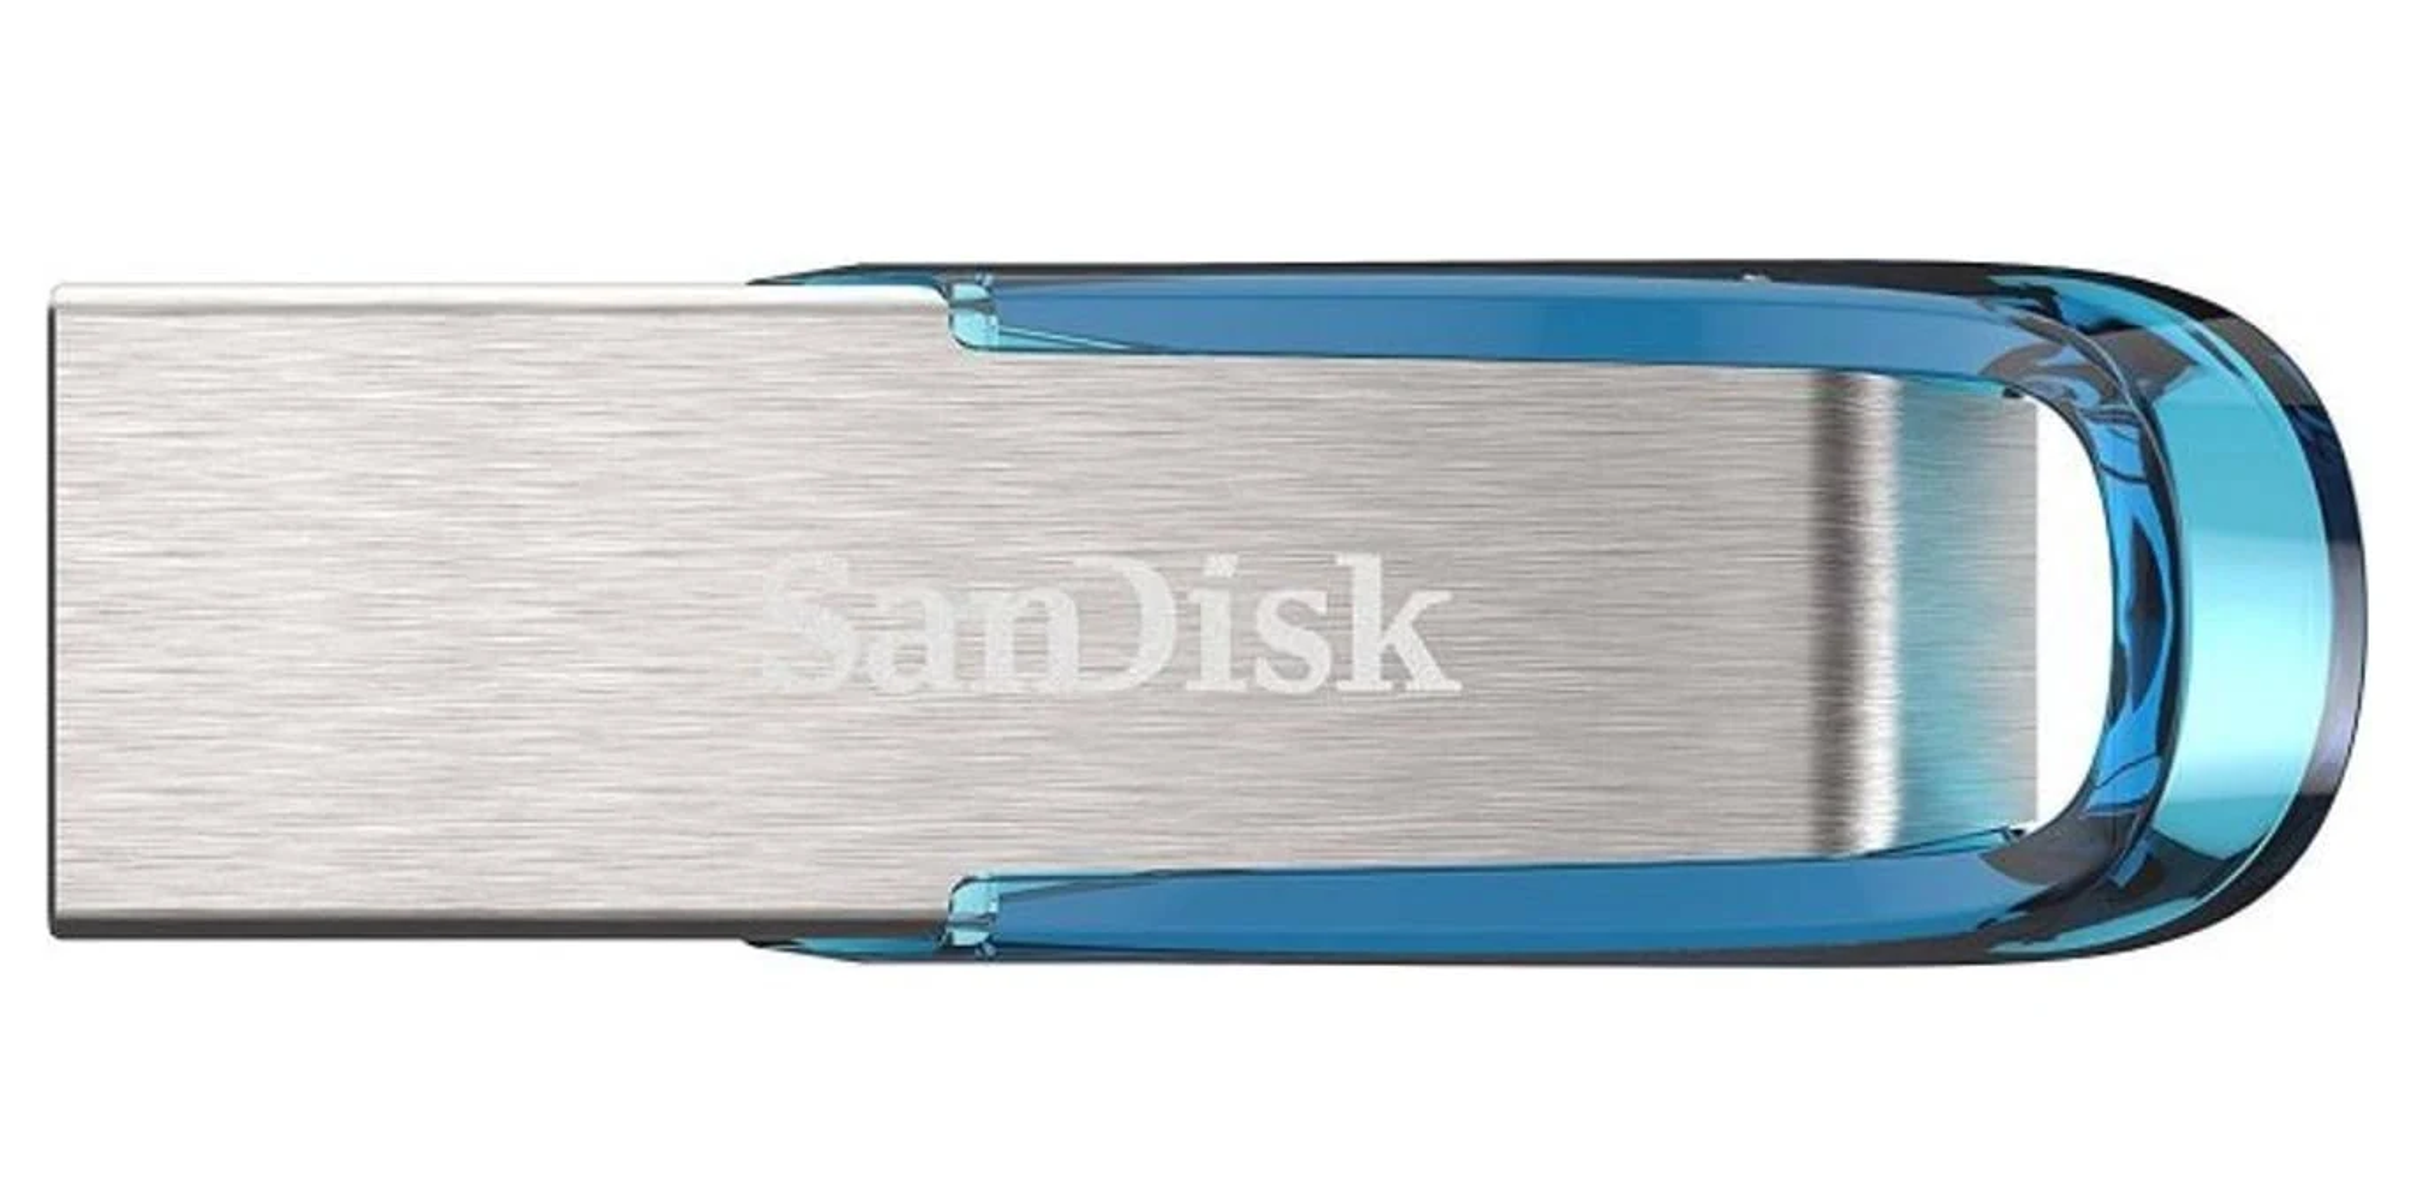 SANDISK SDCZ73-032G-G46B 32 GB) (Schwarz, USB-Flash-Laufwerk